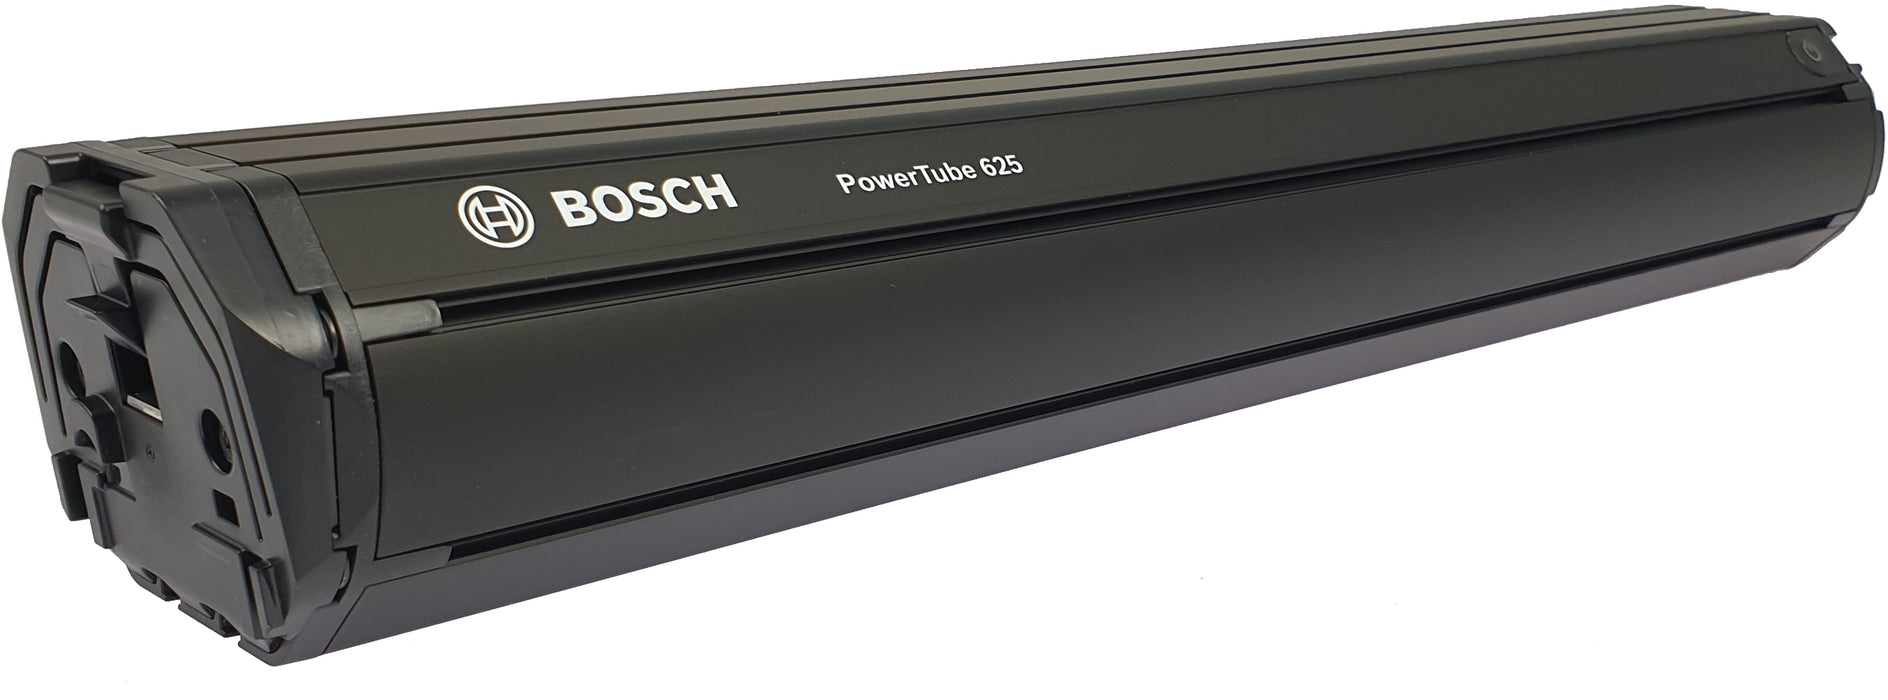 Bosch Power Tube 625 Vertical E-Bike Battery